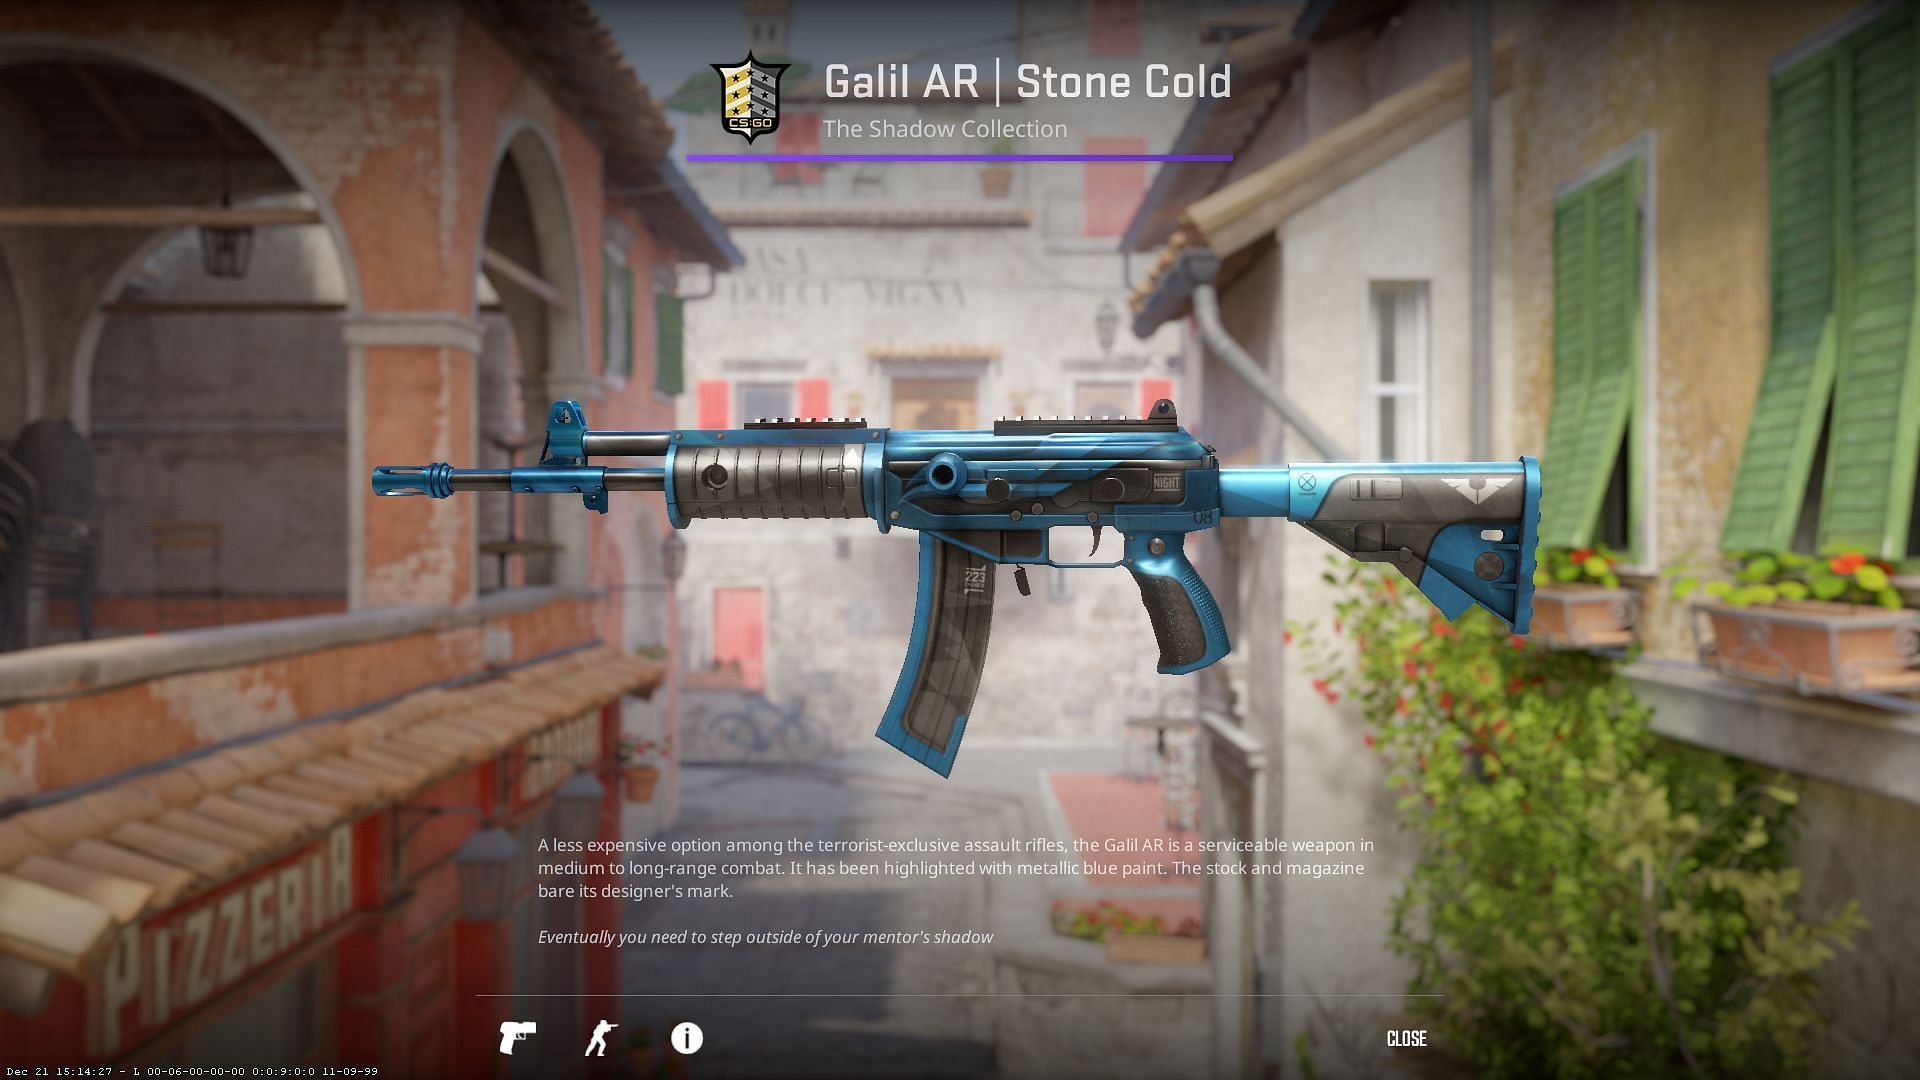 Galil AR Stone Cold (Image via Valve)